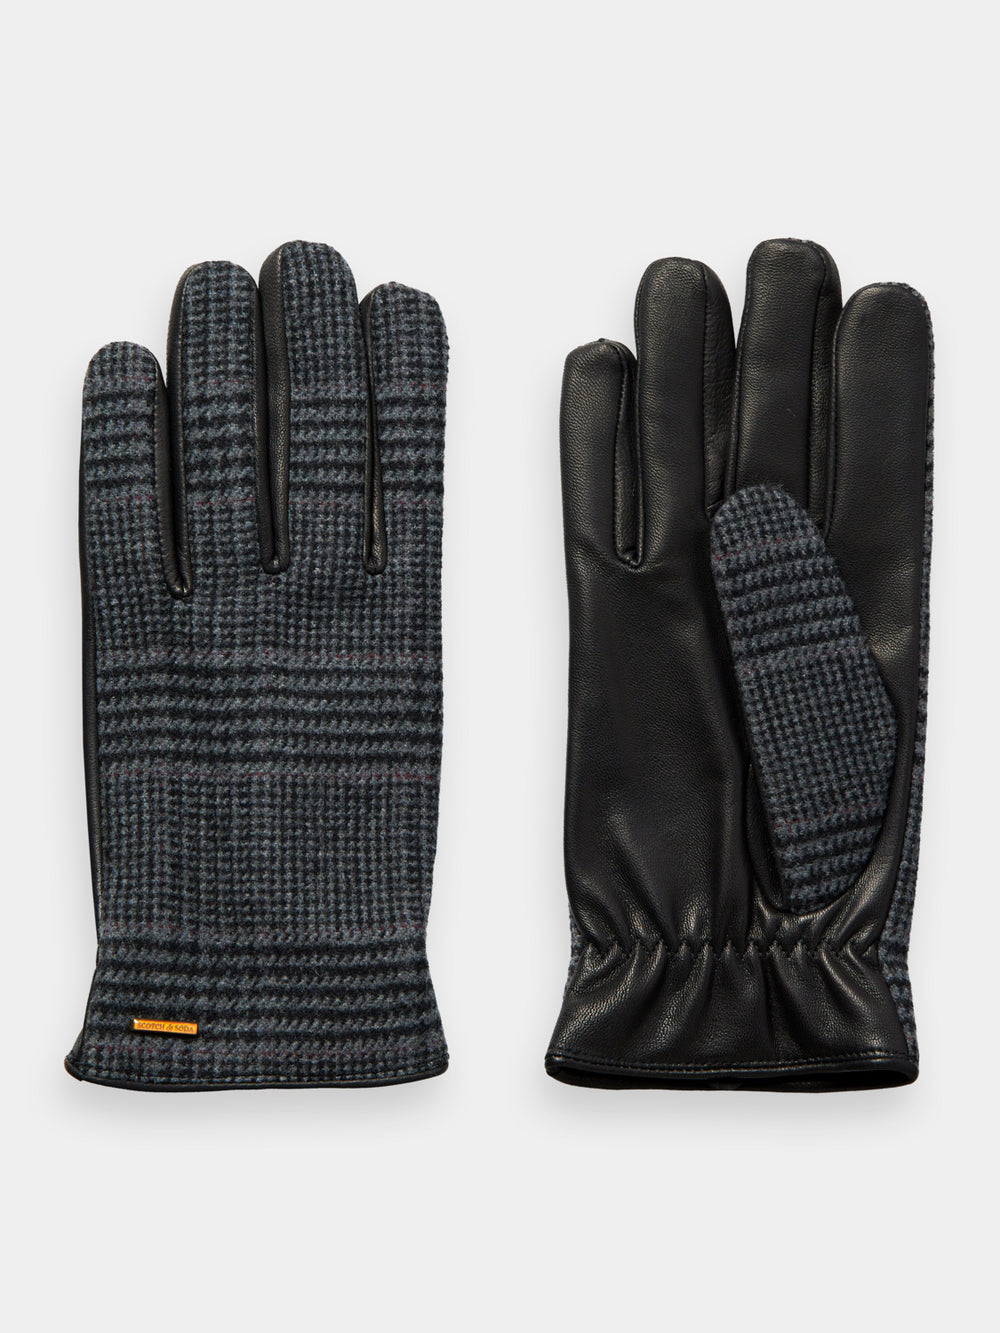 Leather & wool gloves - Scotch & Soda AU